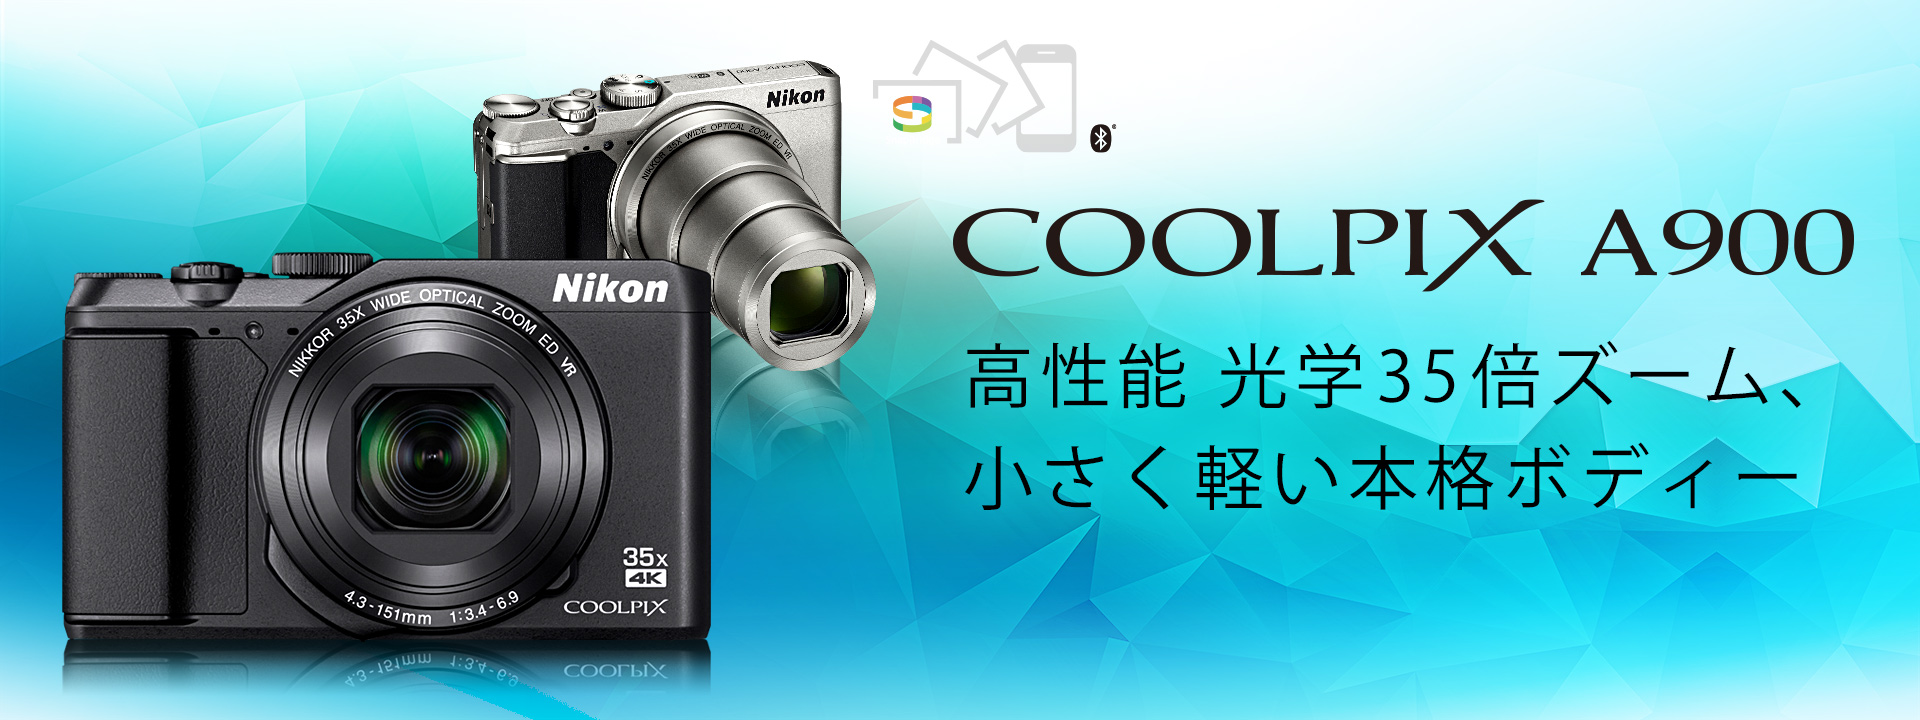 【早い者勝ち】Nikon デジタルカメラ COOLPIX A900